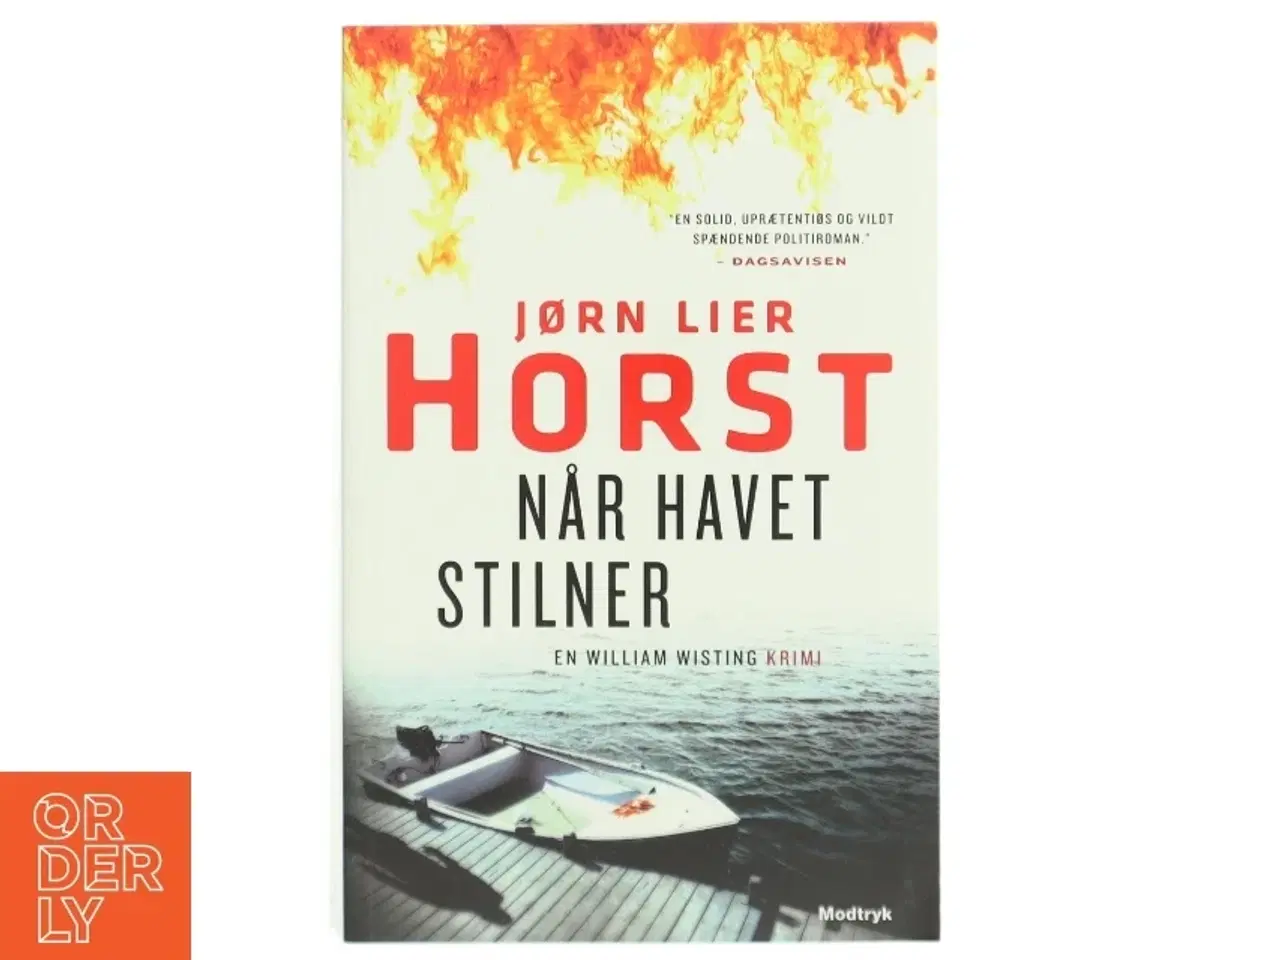 Billede 1 - 'Når havet stilner' af Jørn Lier Horst (bog)